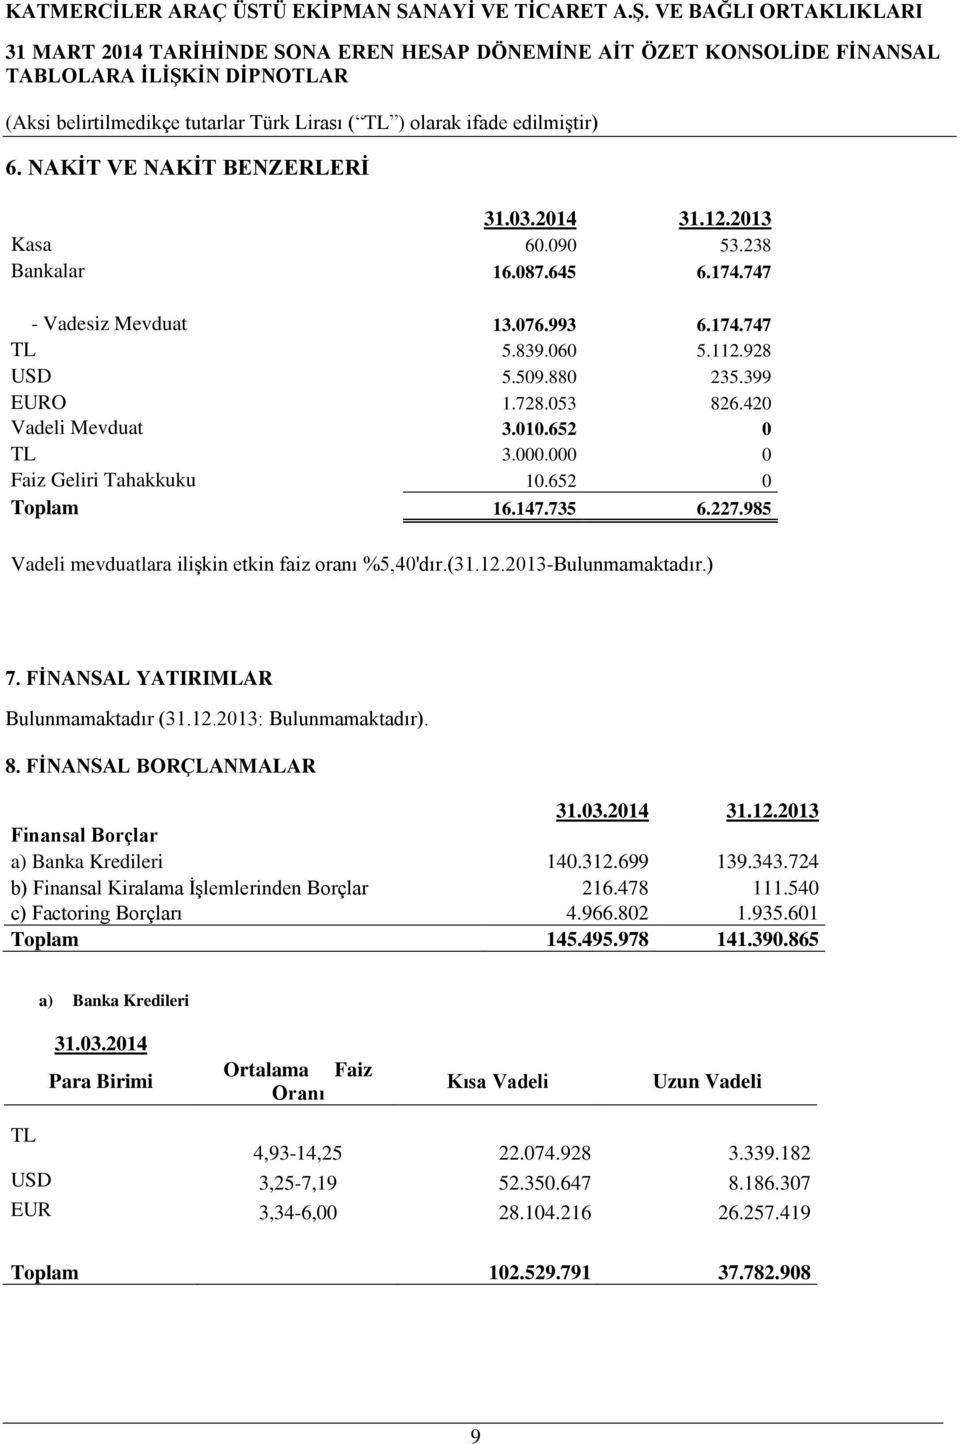 FİNANSAL YATIRIMLAR Bulunmamaktadır (31.12.2013: Bulunmamaktadır). 8. FİNANSAL BORÇLANMALAR Finansal Borçlar a) Banka Kredileri 140.312.699 139.343.724 b) Finansal Kiralama İşlemlerinden Borçlar 216.